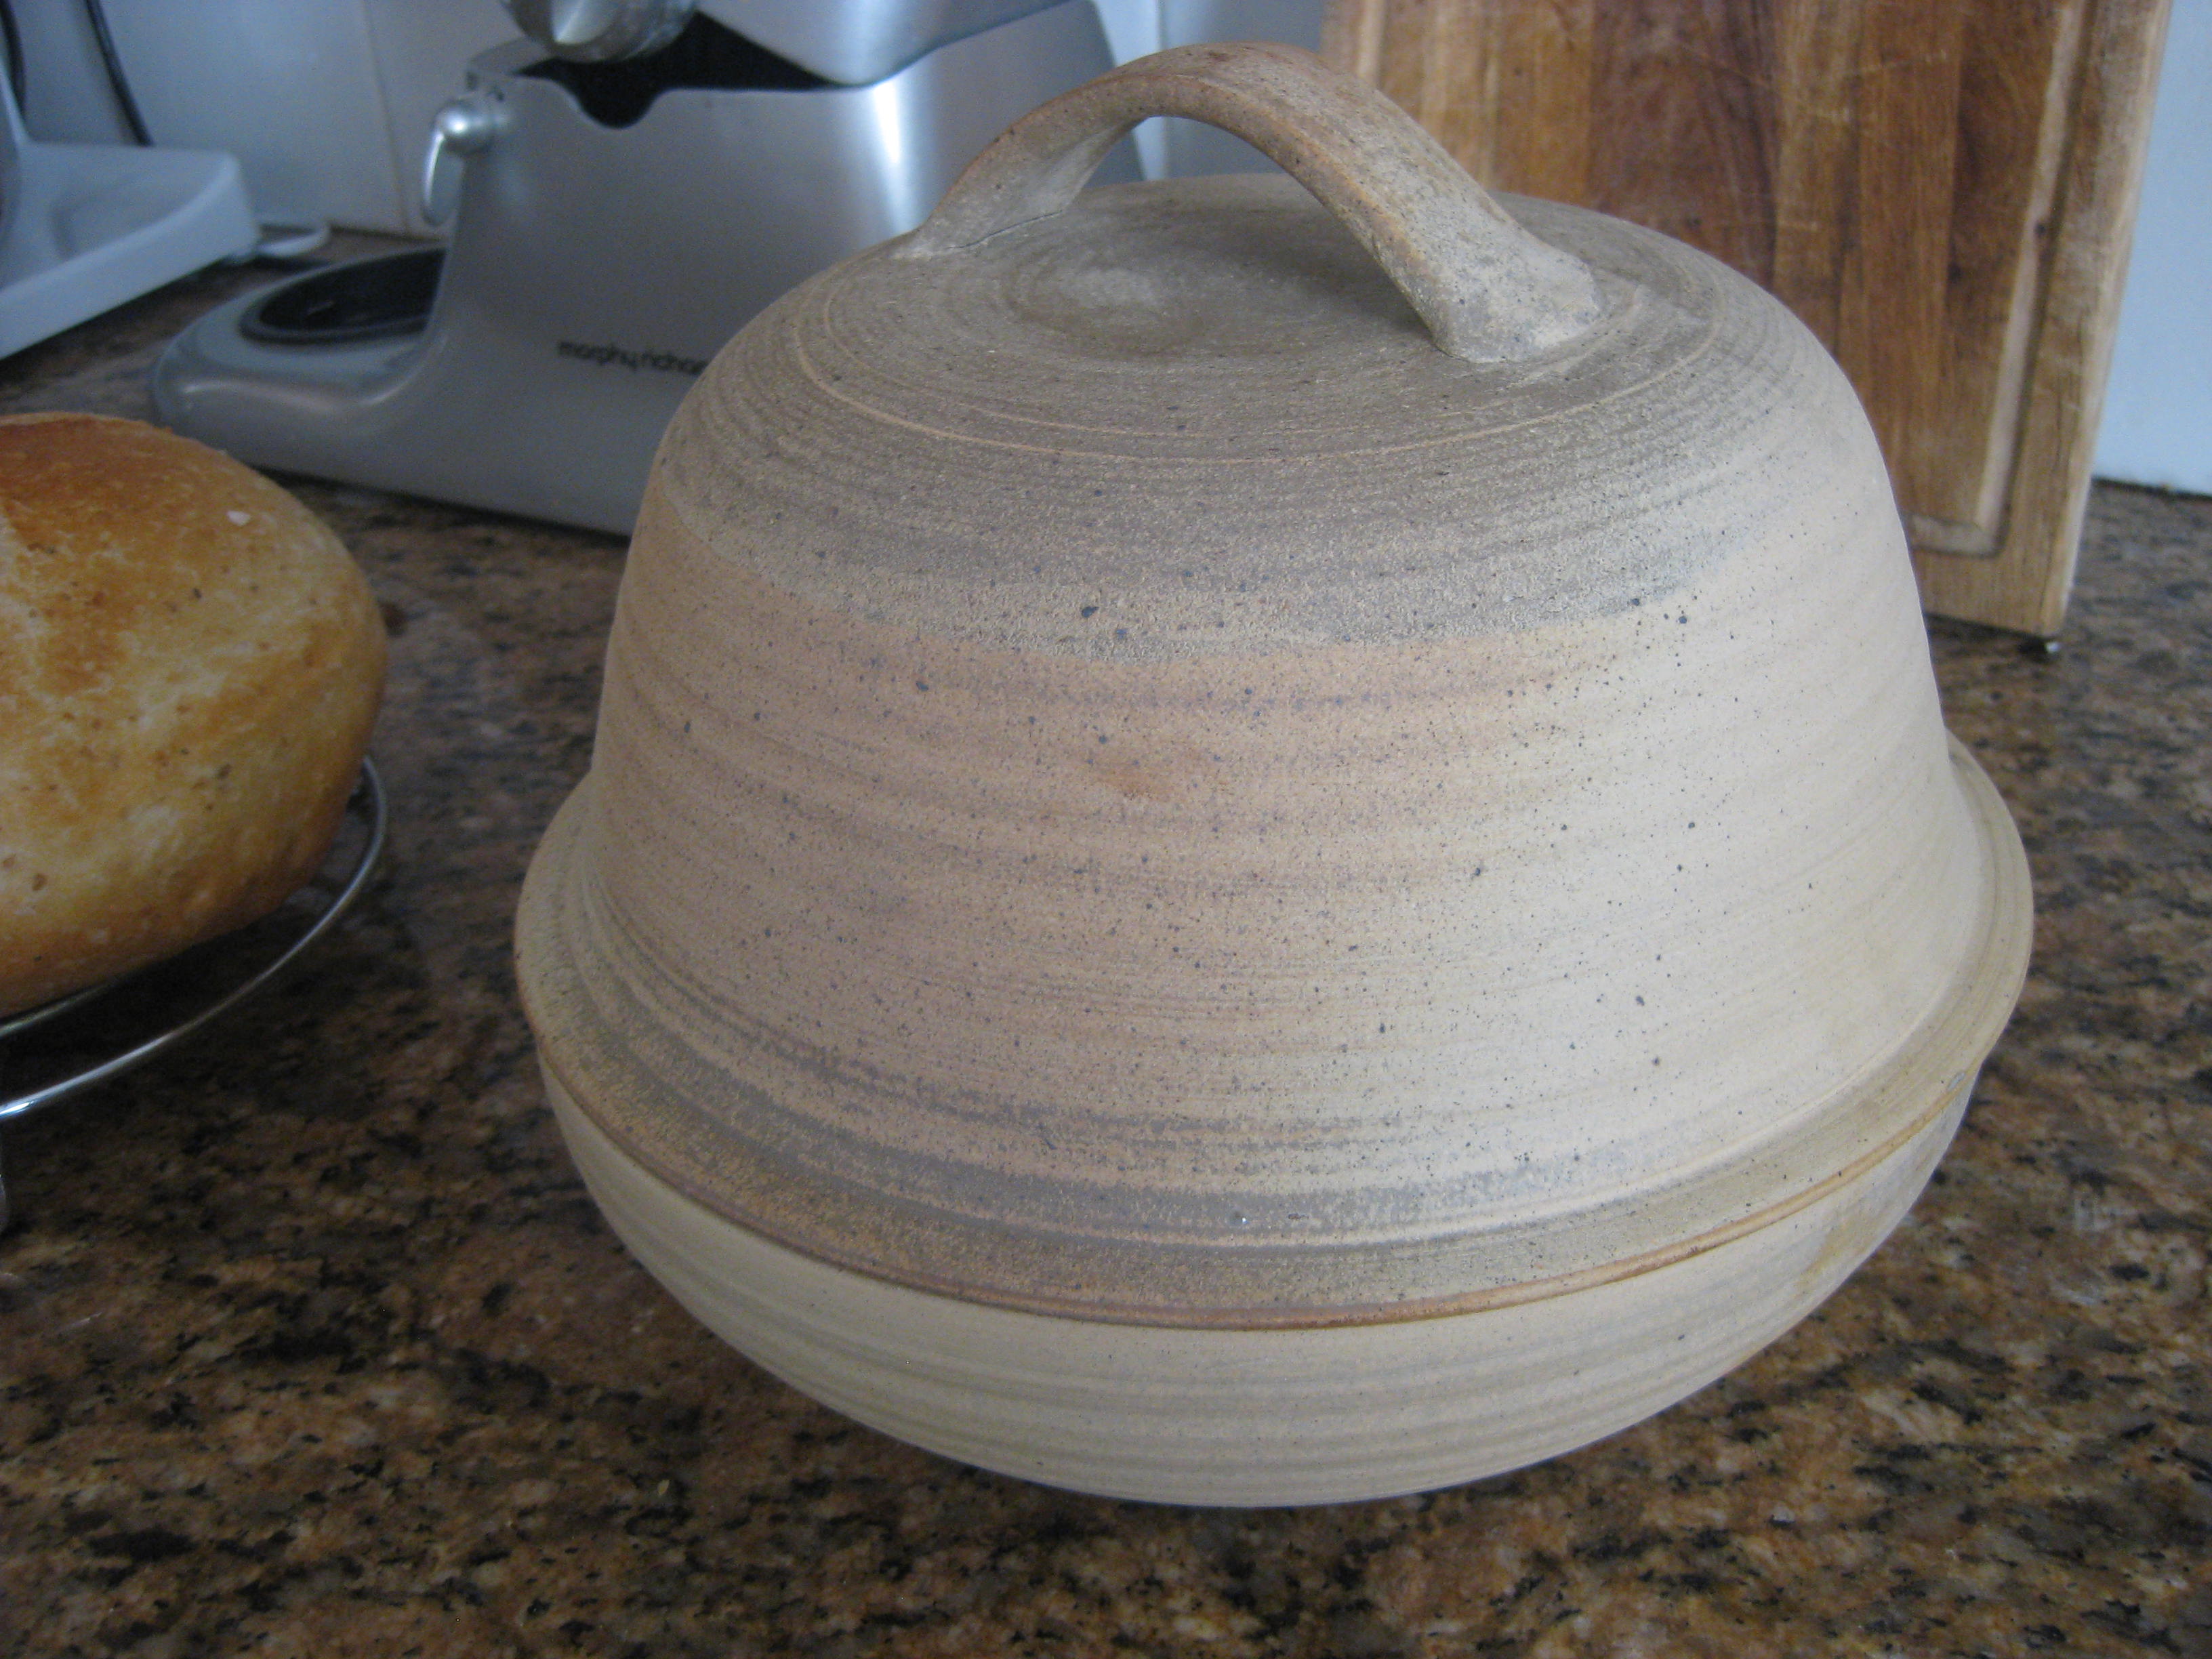 Formy ceramiczne, nakrętki, naczynia, tace do wypieku chleba